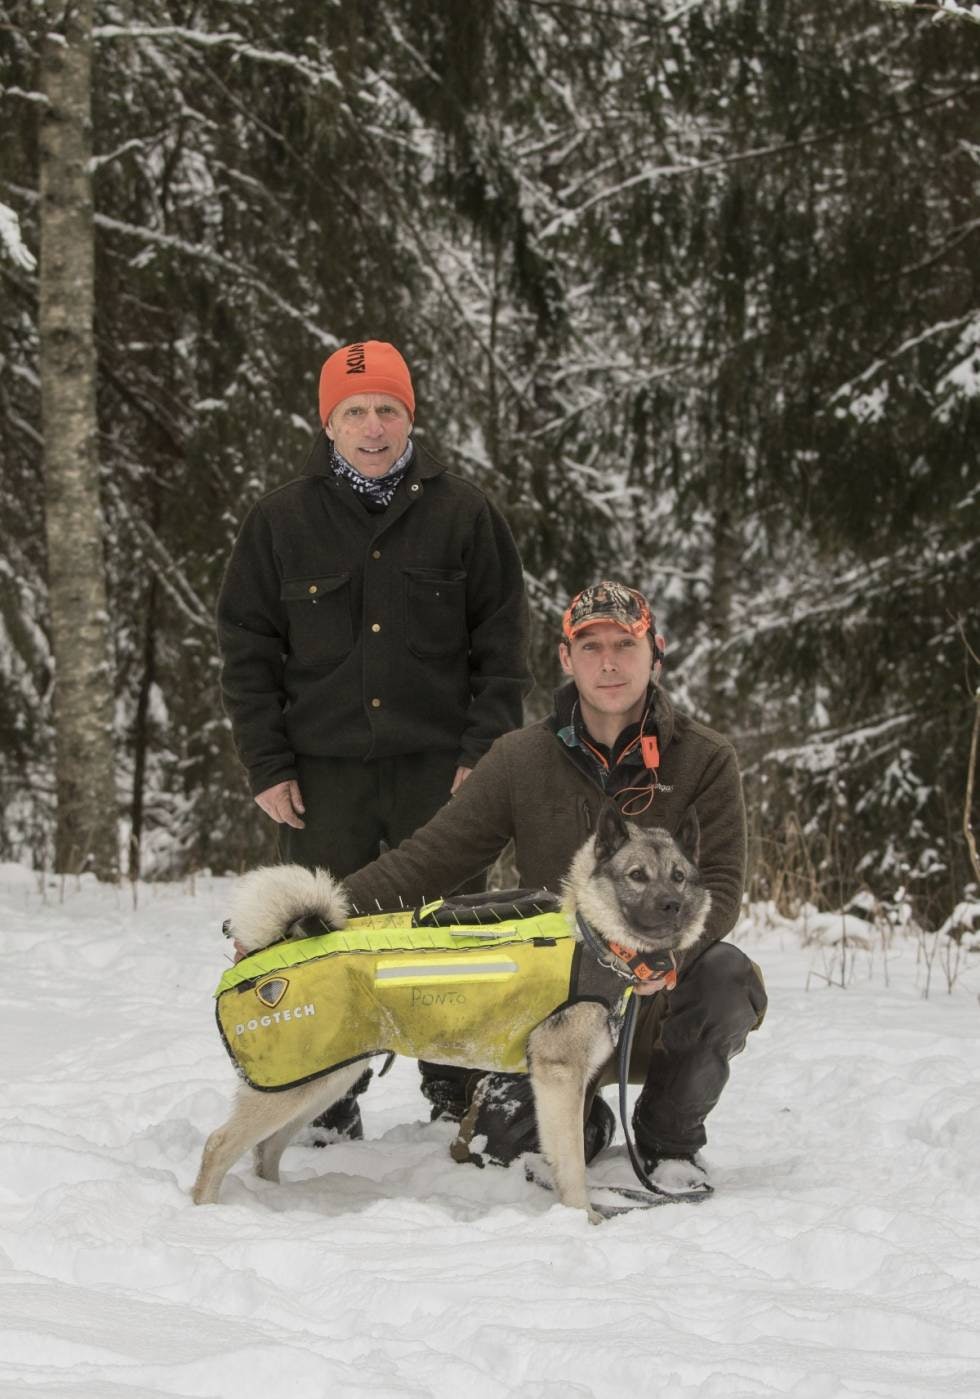 JEGERE: Roar Stokkebekk (t.v) og Jon Syver Sundby bor og jakter i ulvesonen. Stokkebekk tør ikke lengre slippe løshund på elg, mens Sundby setter vernevest på hunden før han slipper.